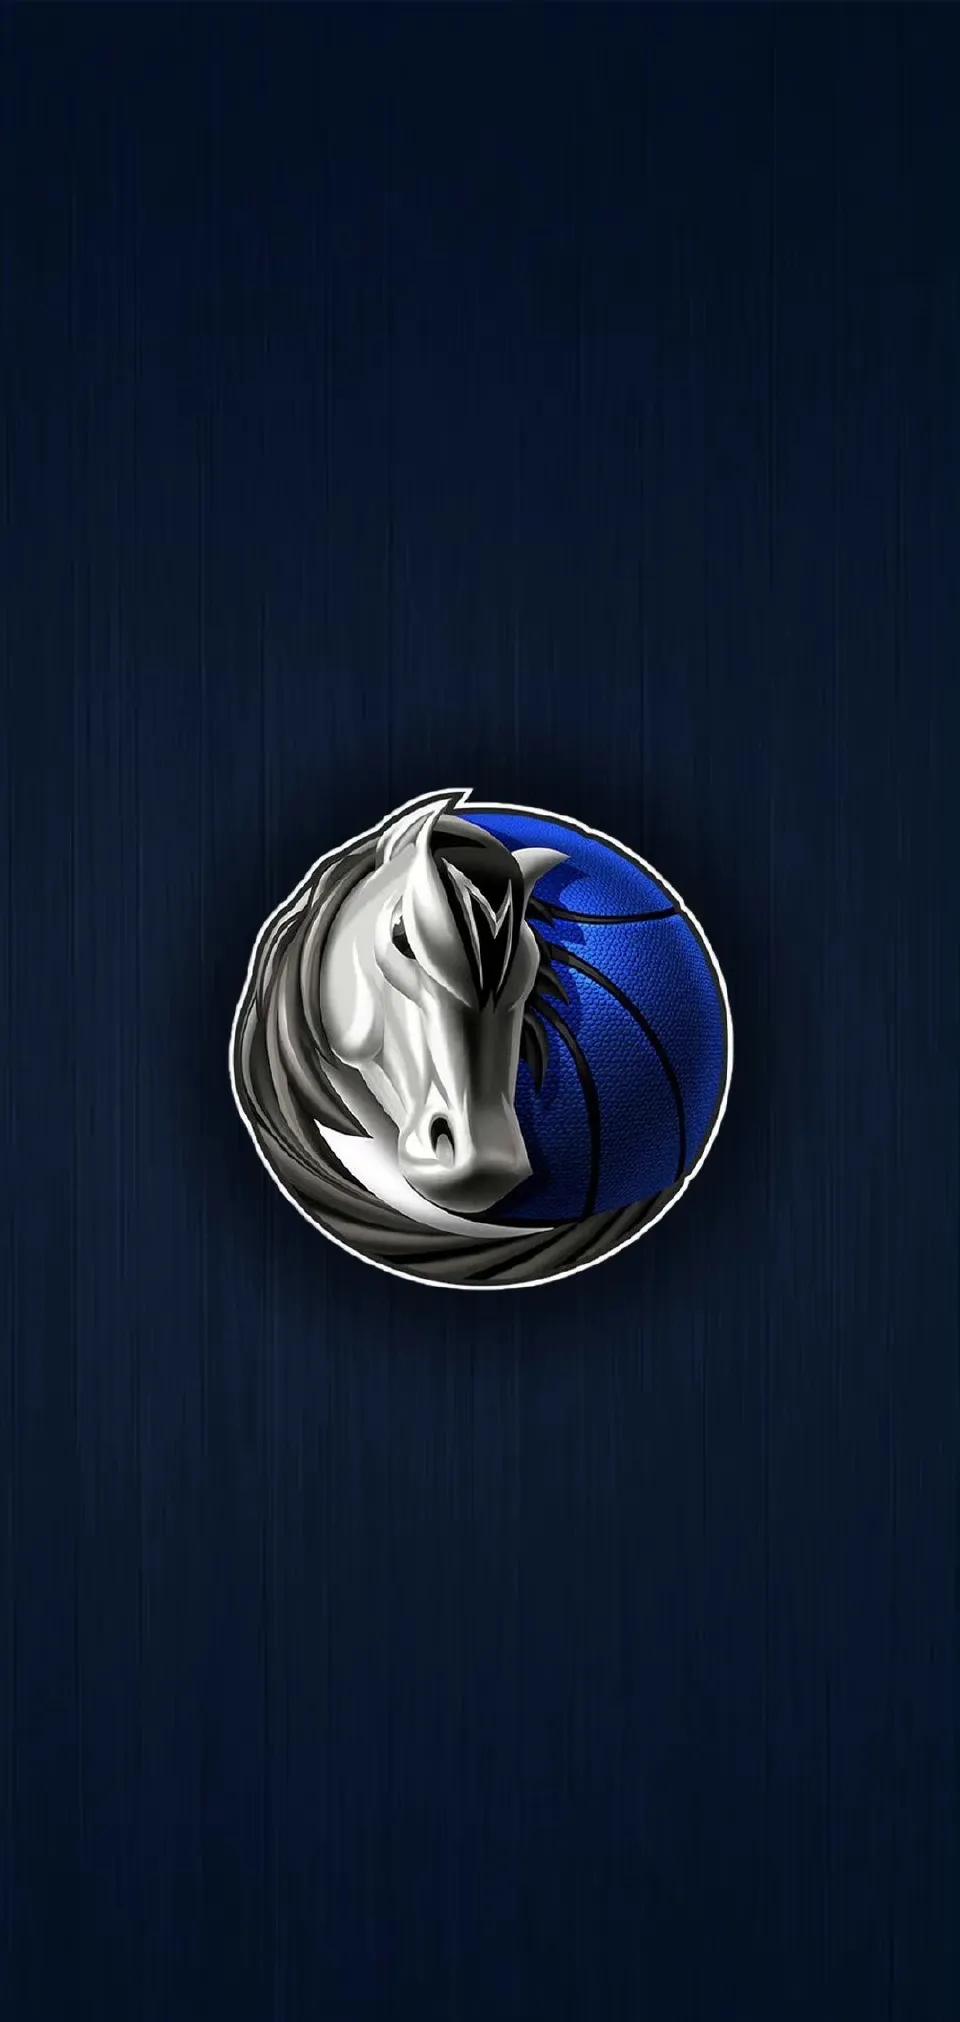 金州勇士队徽(3d效果的nba球队logo壁纸,喜欢篮球的赶紧收藏吧)